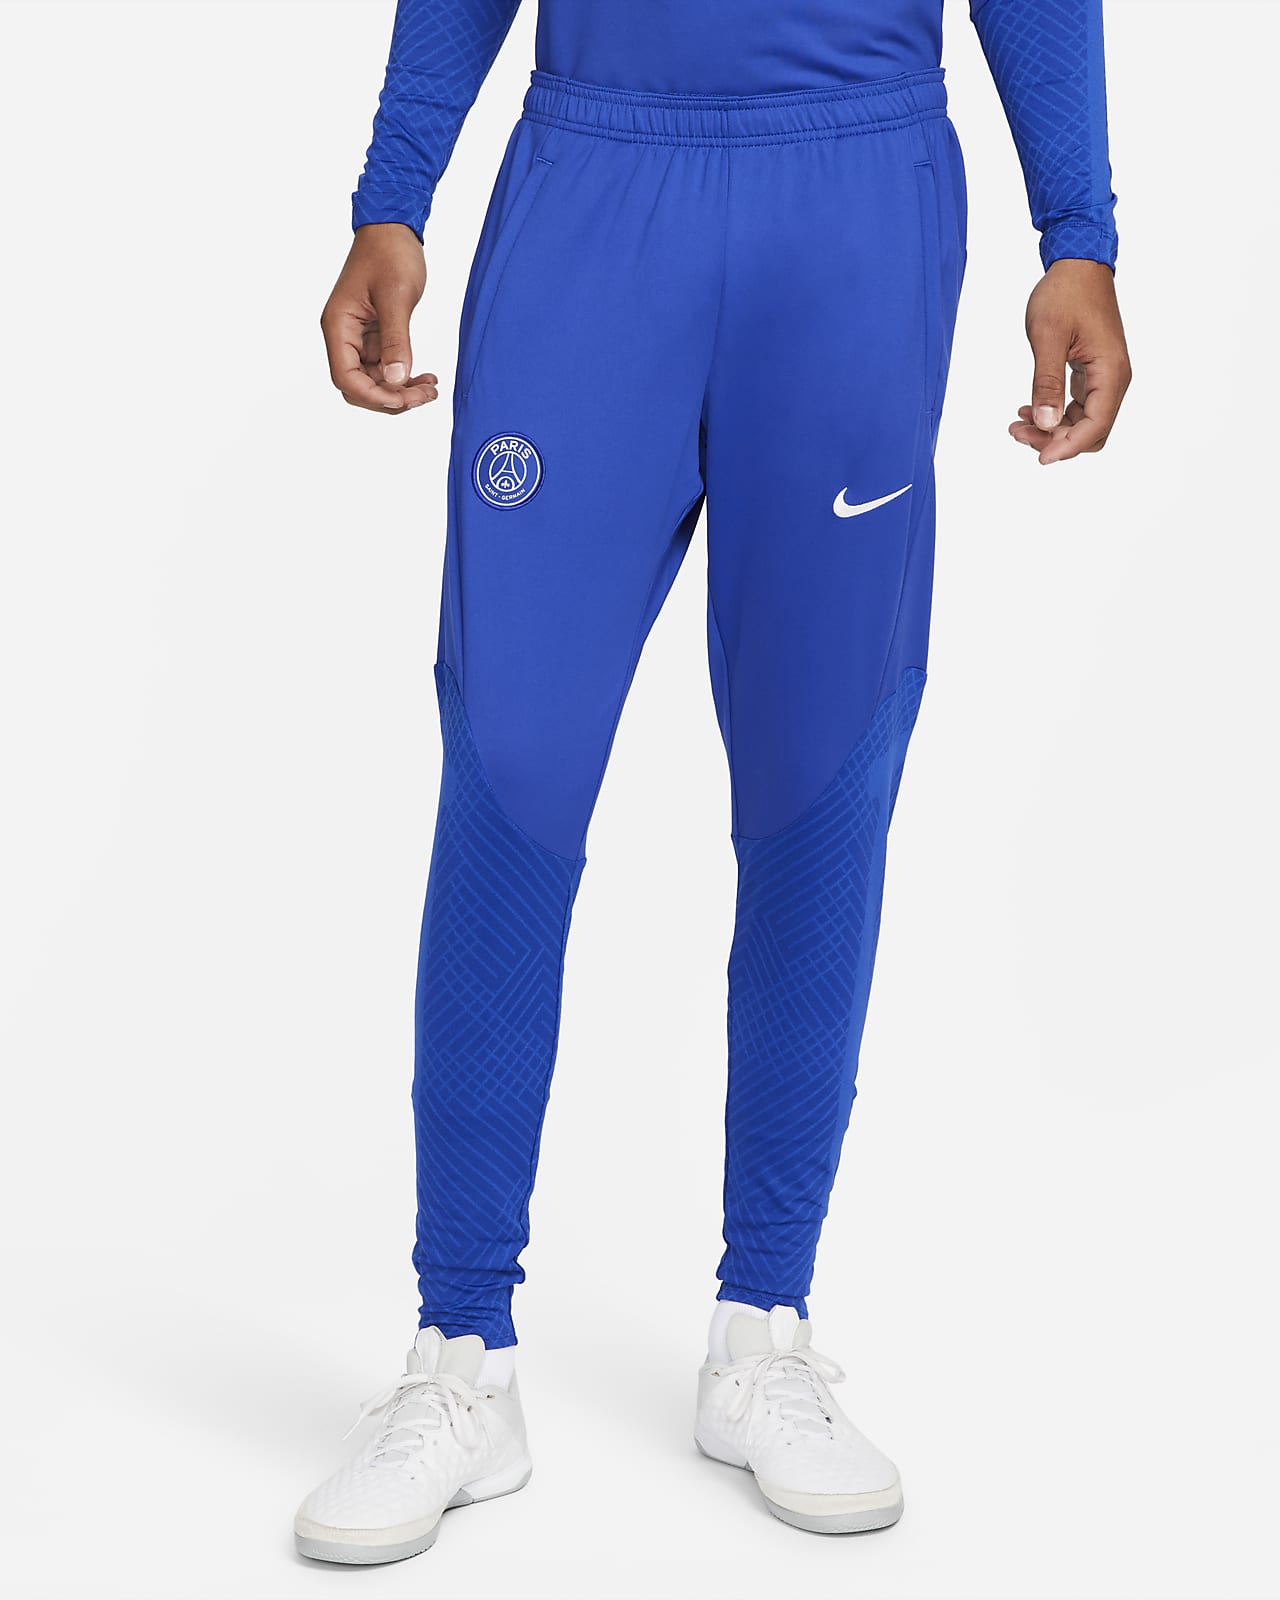 Football Pants  Tights Nikecom